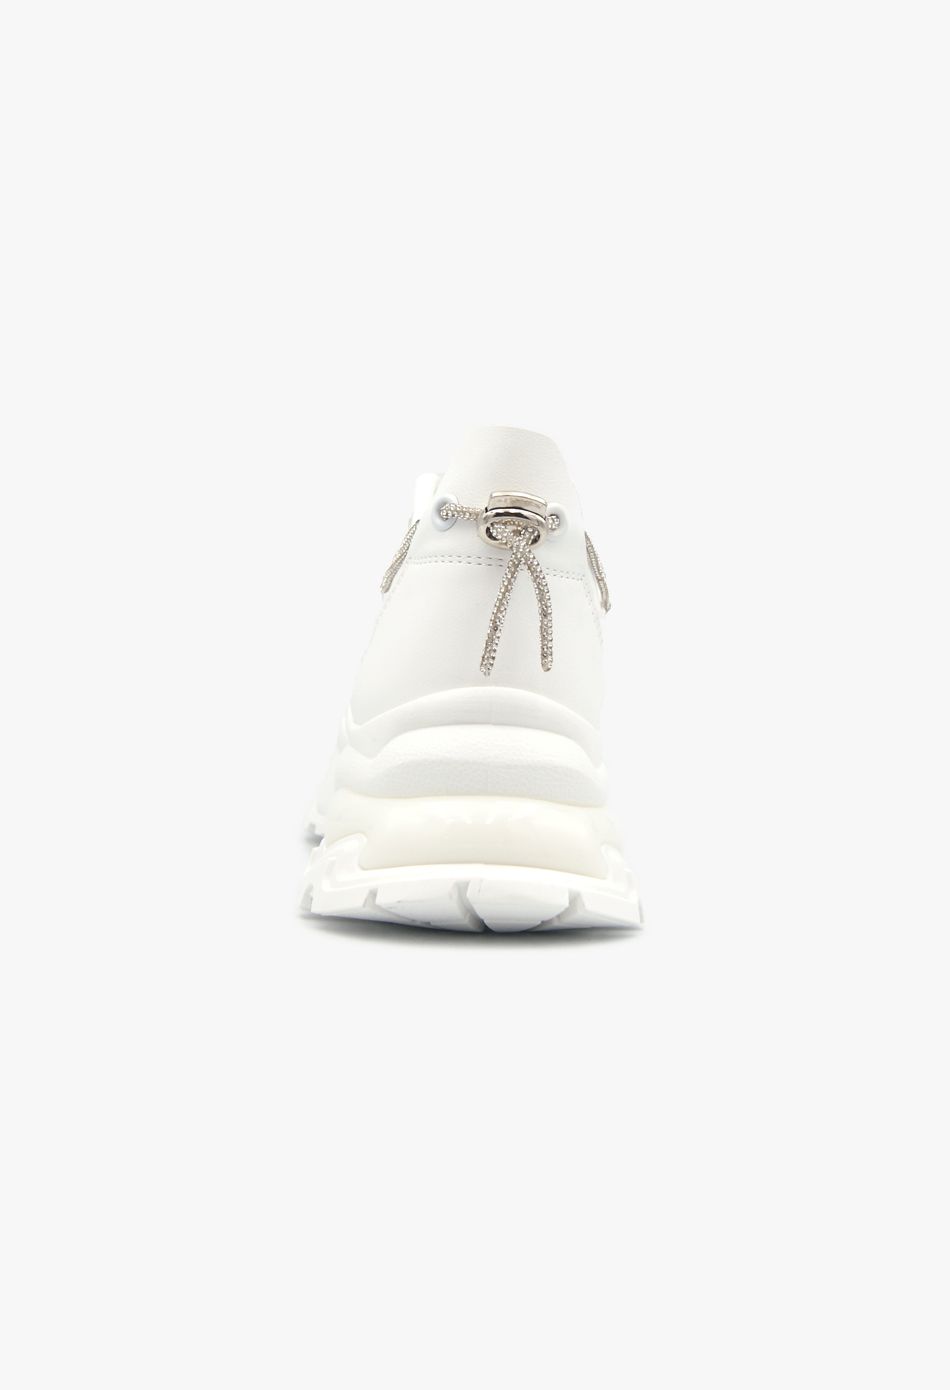 Γυναικείο Αθλητικό Chunky Sneaker με Strass λευκό / C2120-white Γυναικεία Αθλητικά και Sneakers joya.gr